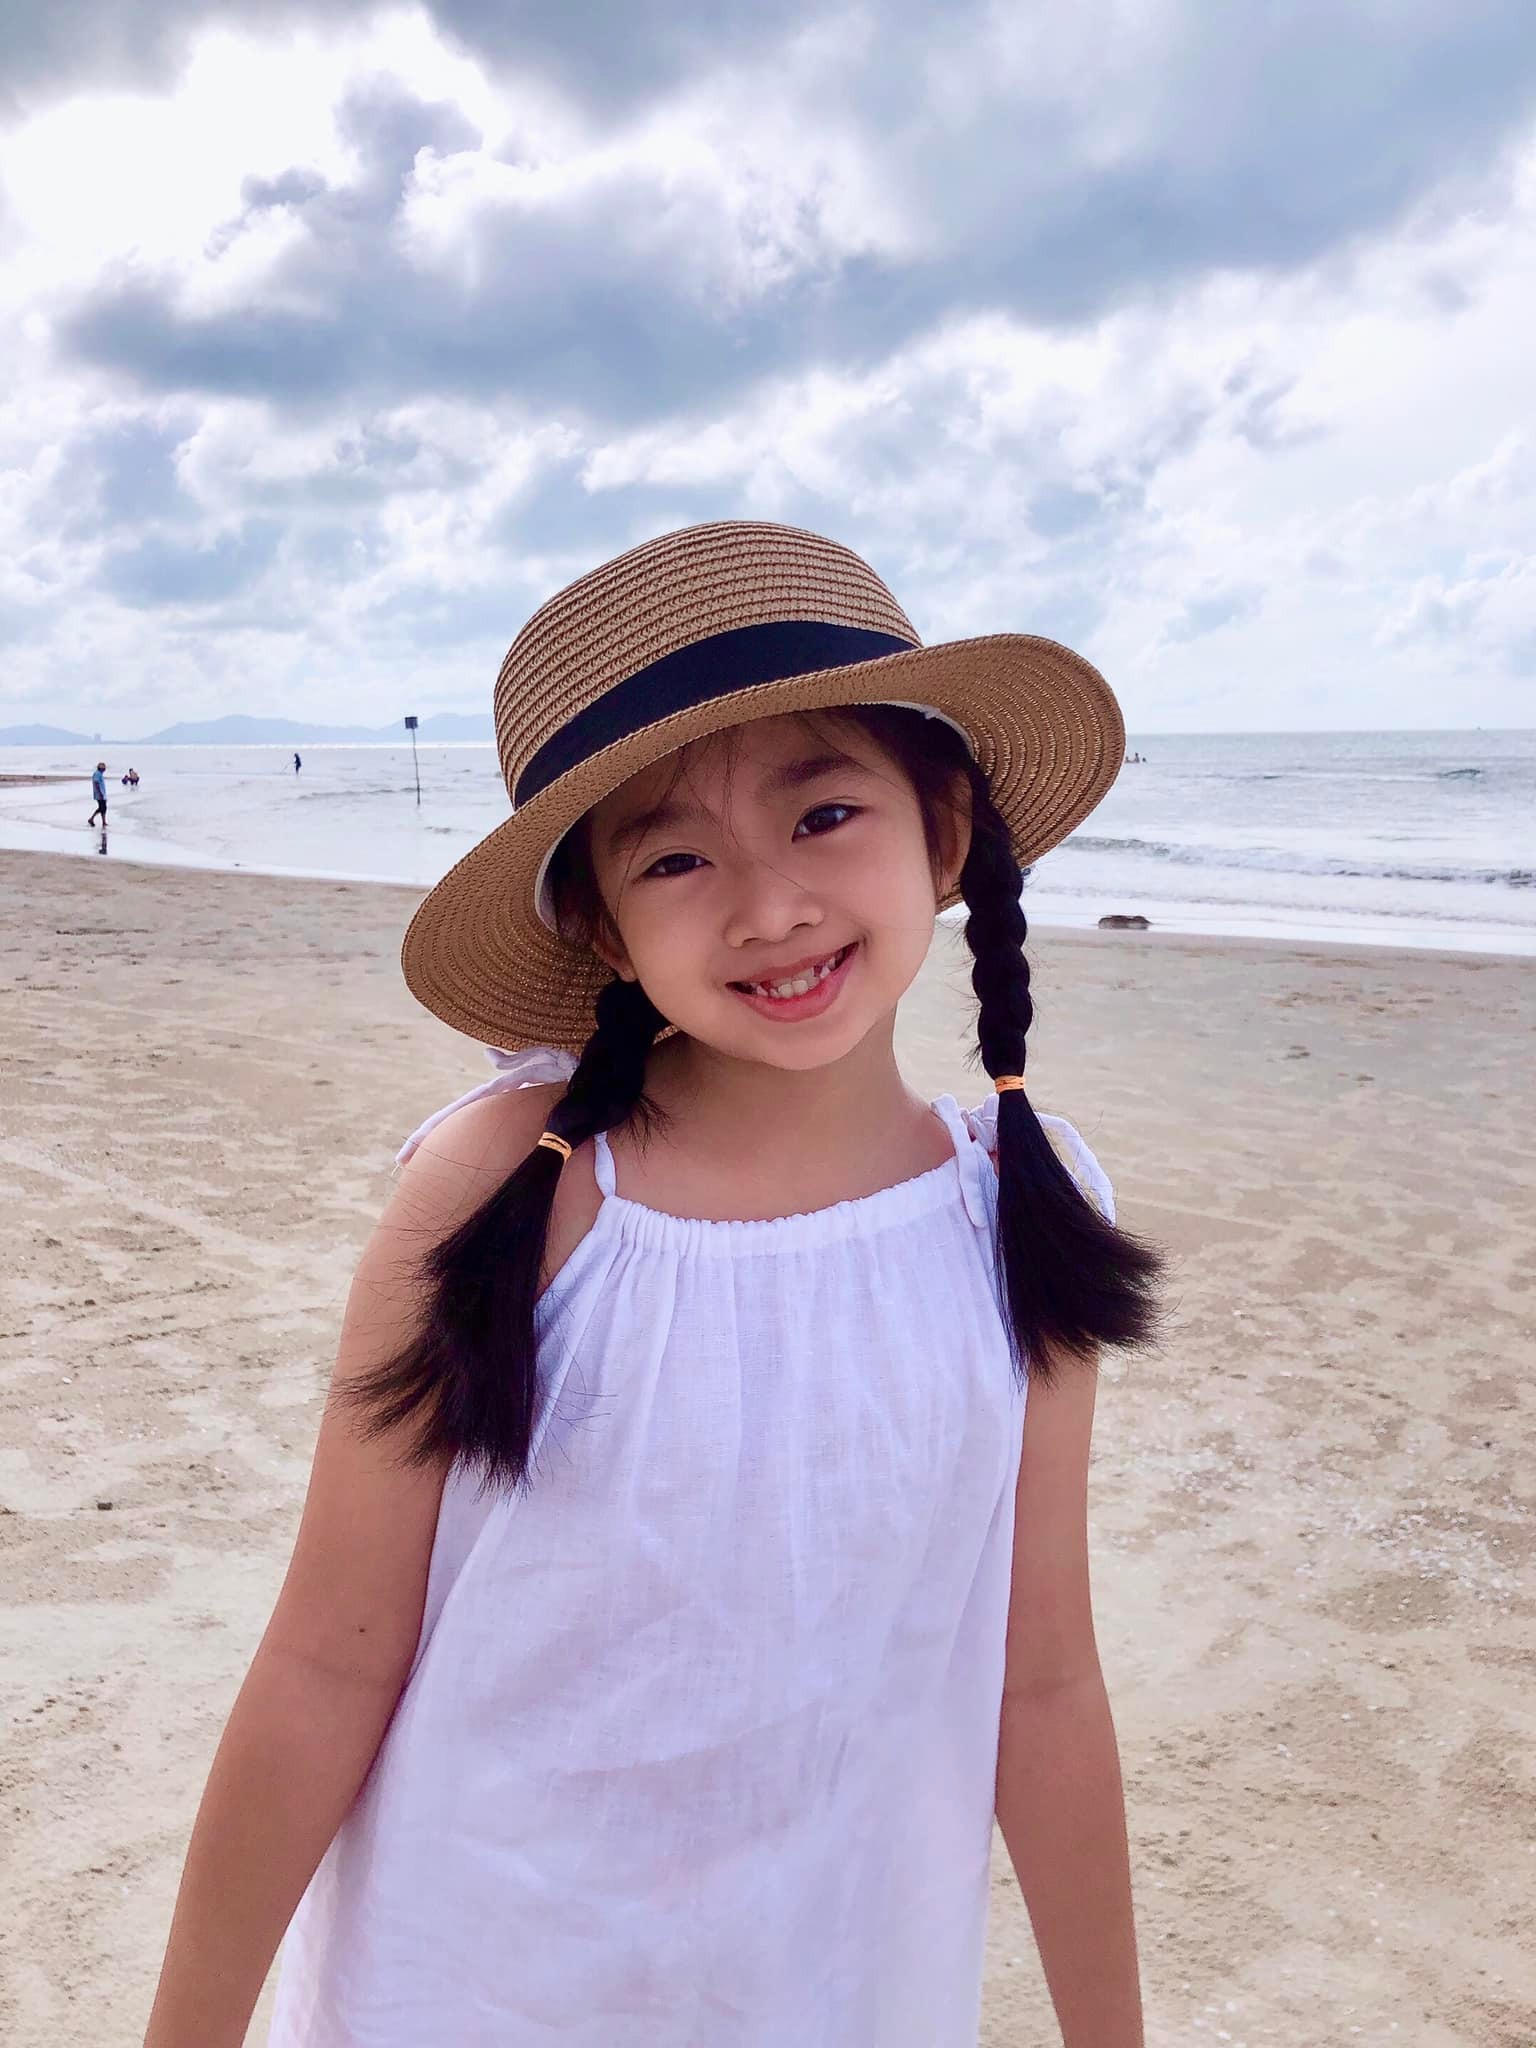 Con gái cố diễn viên Mai Phương vui vẻ rạng rỡ trong buổi tổng kết lớp 3